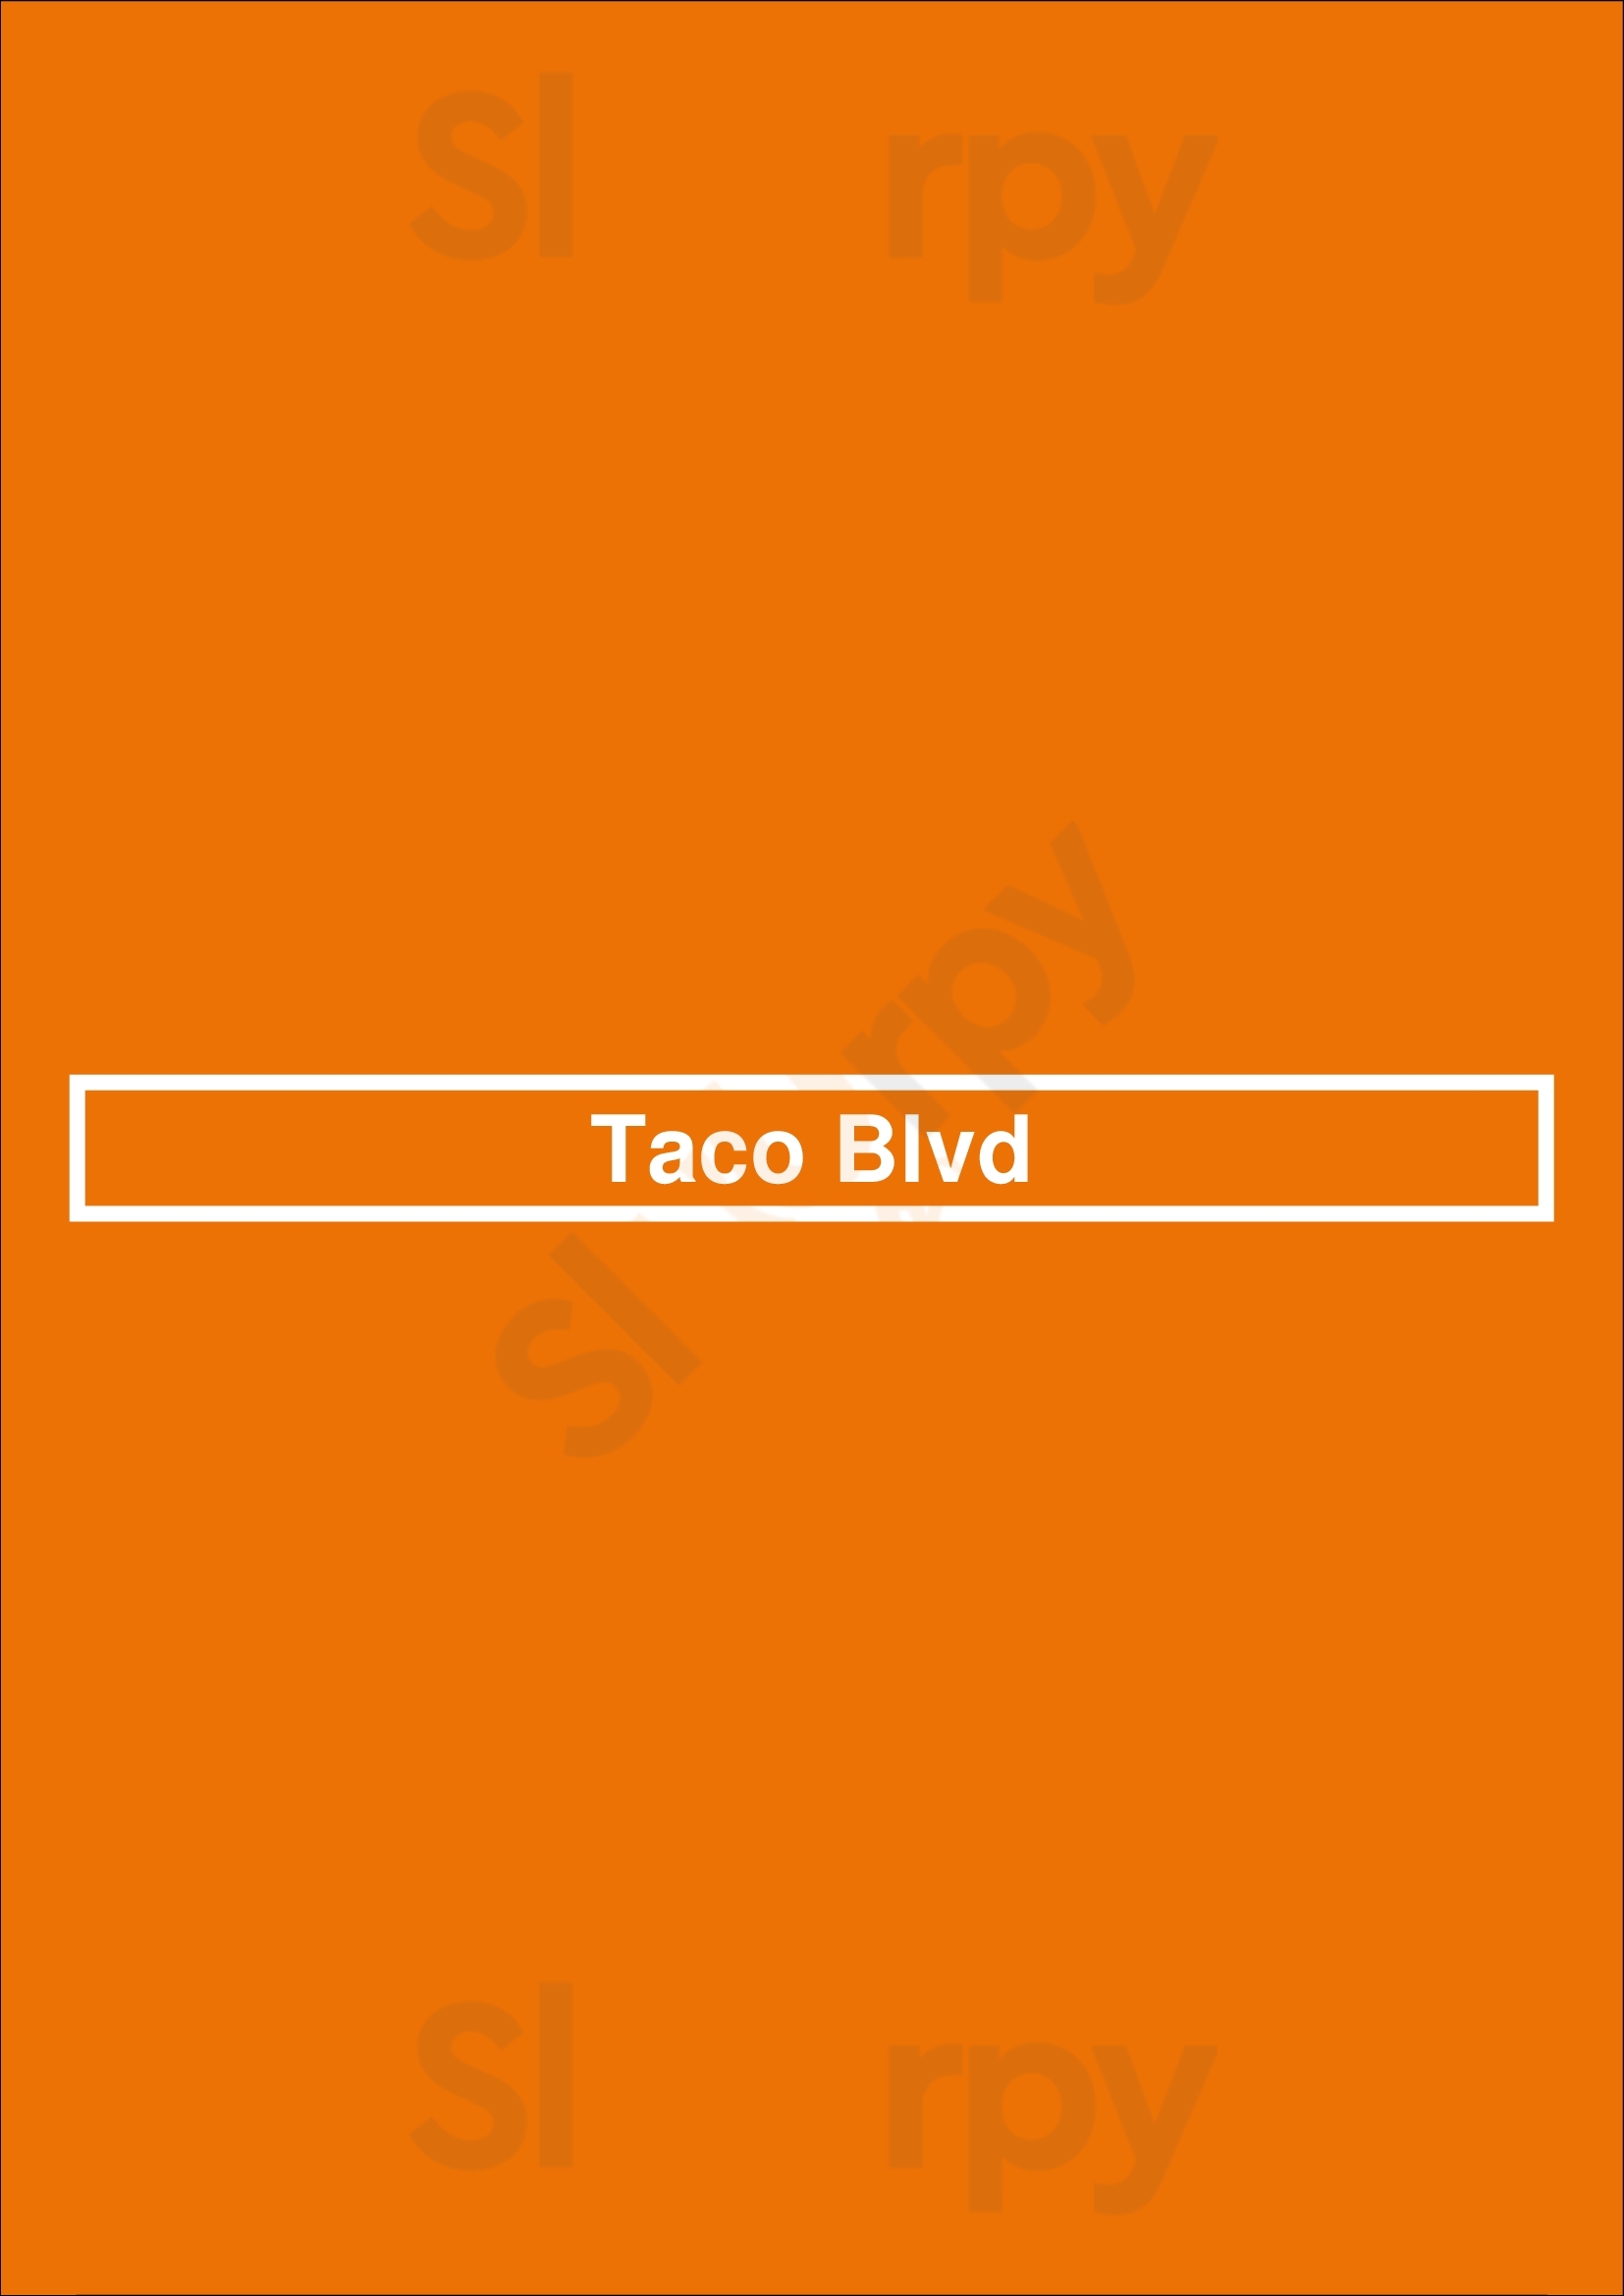 Taco Blvd San Antonio Menu - 1